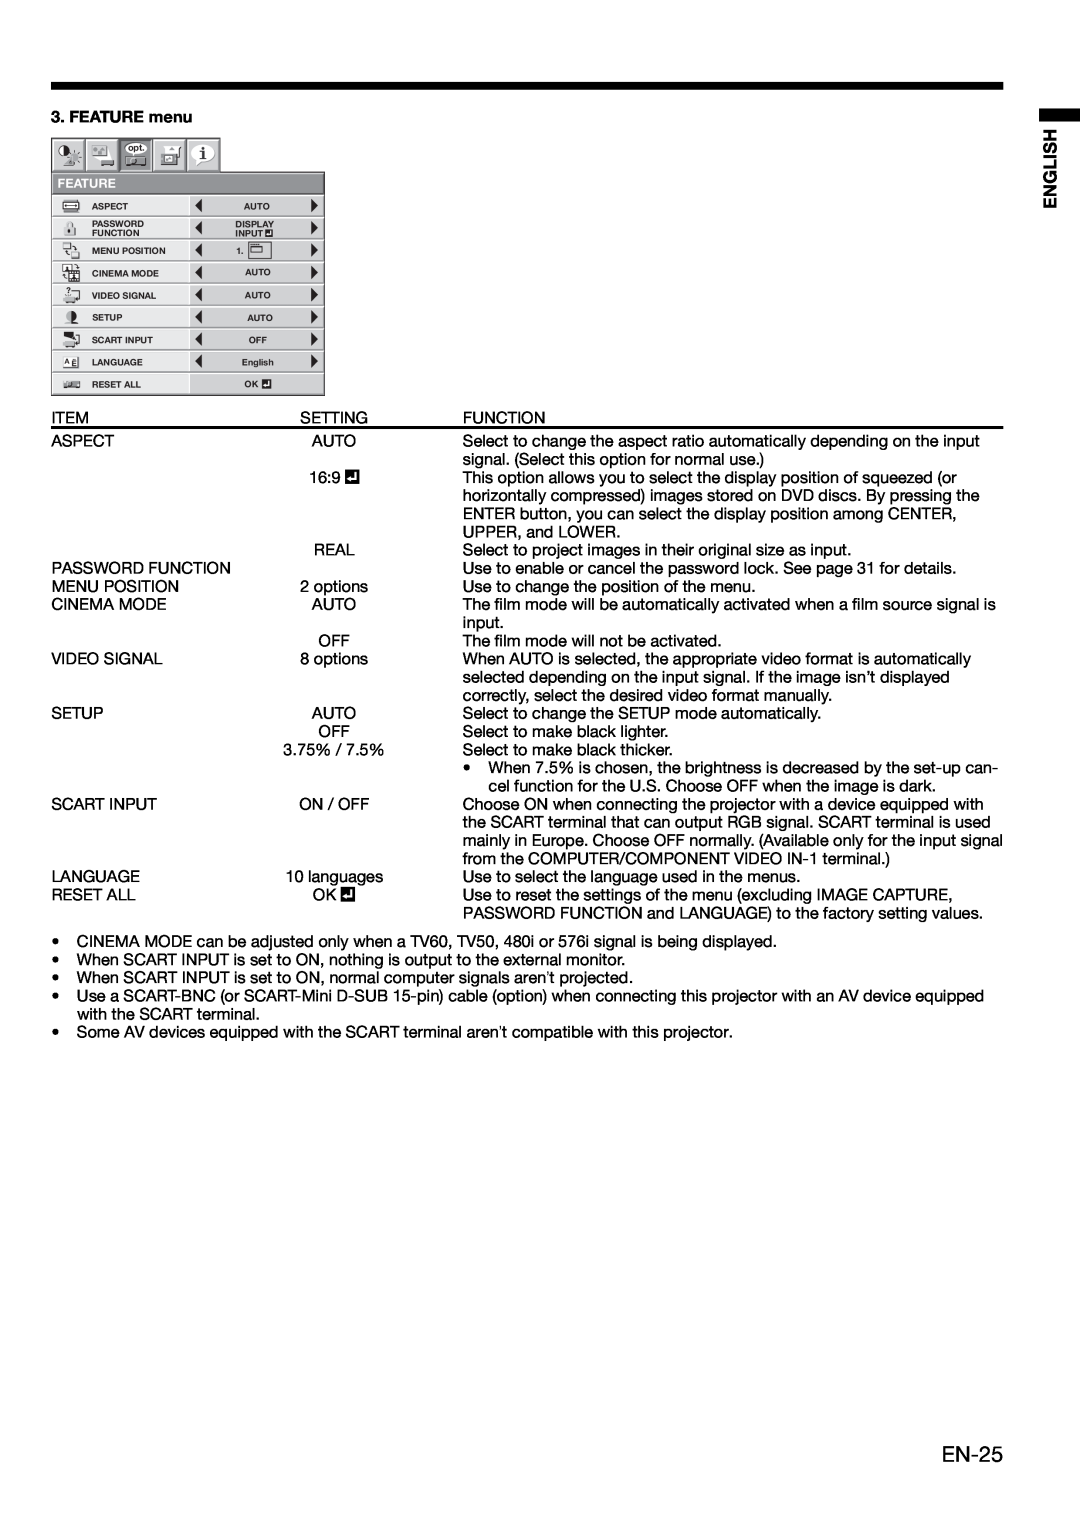 Mitsubishi Electronics XL650U user manual EN-25, English, FEATURE menu 